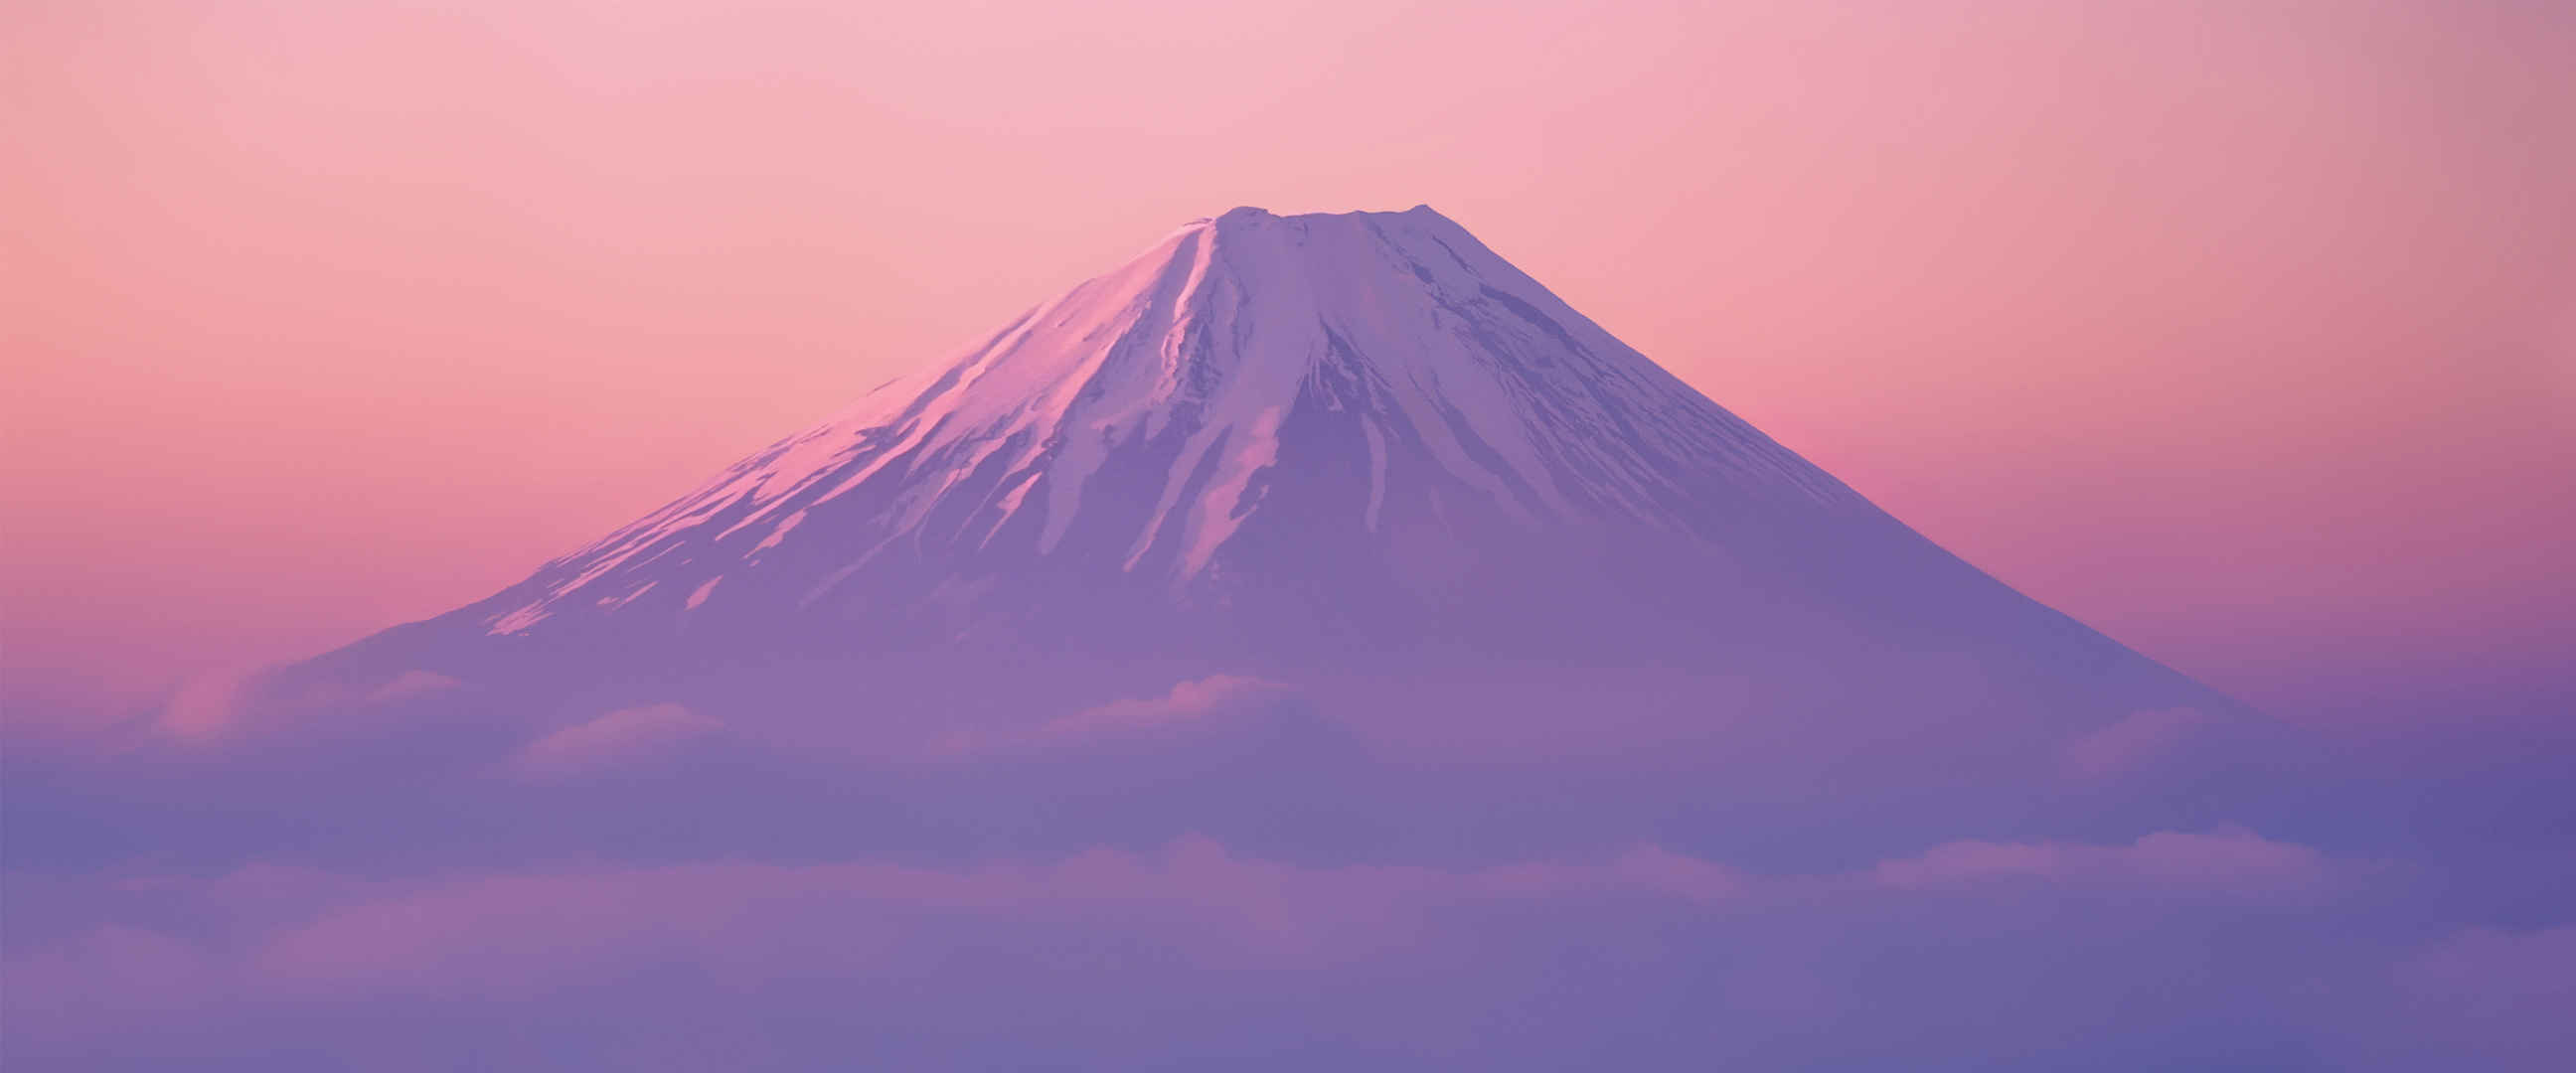 富士山剪影壁纸